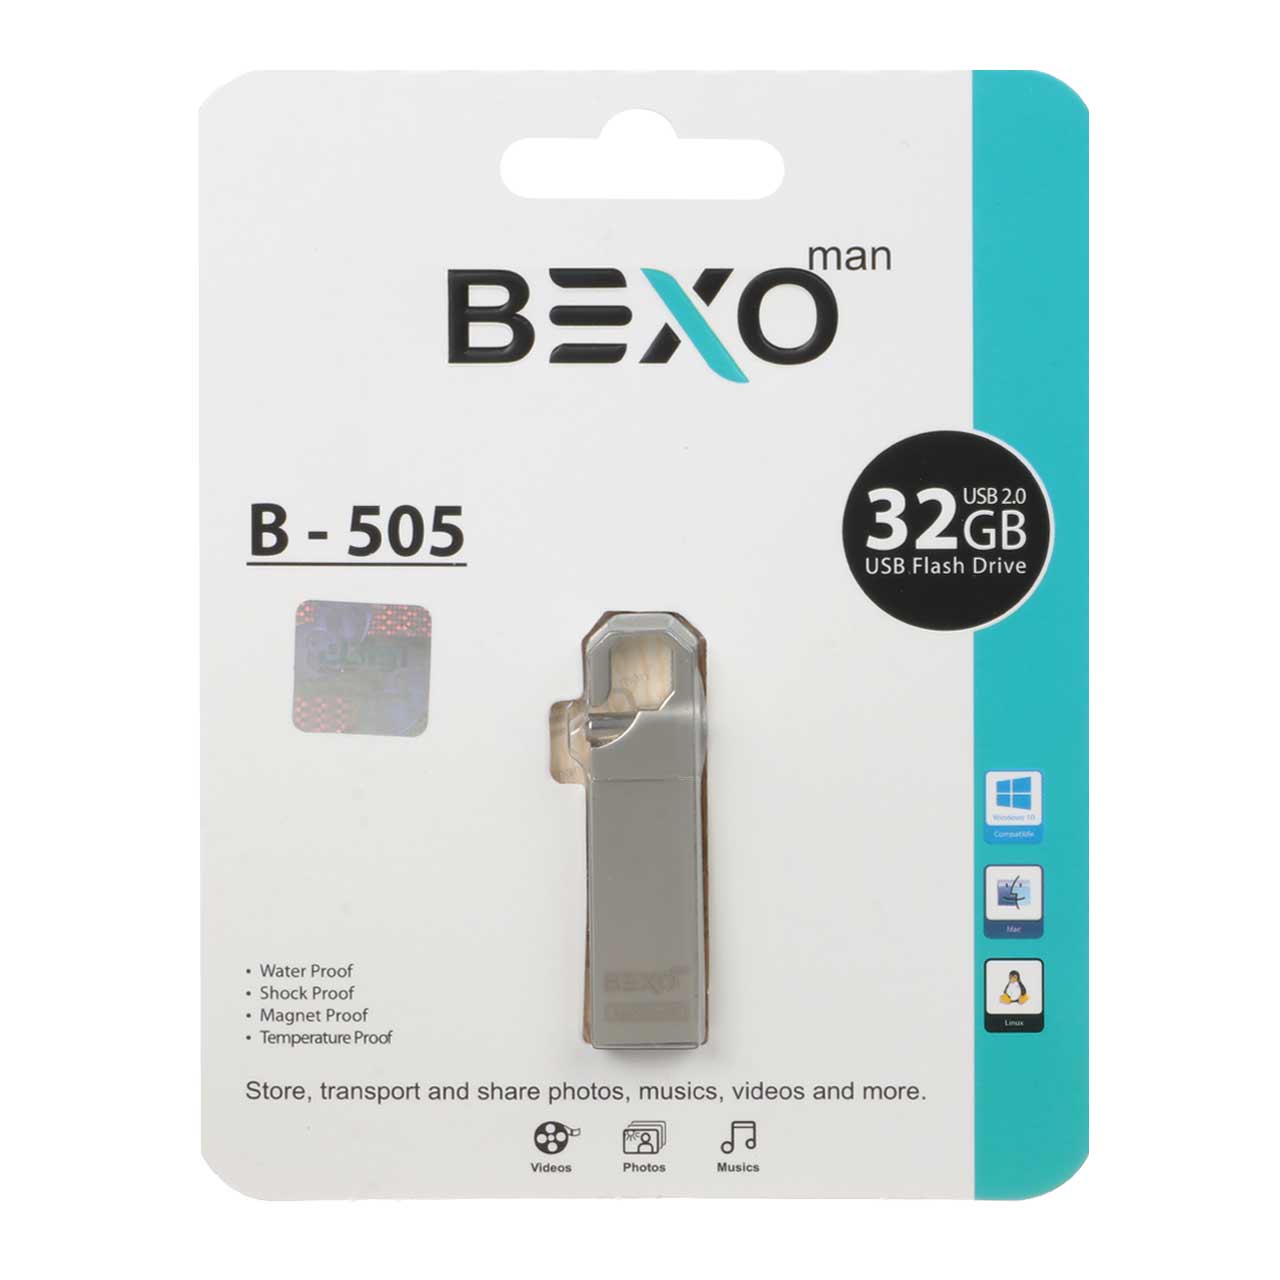 BEXO B-505 USB2.0 Flash Memory - 32GB (گارانتی داده پردازی آواتک) نقره ای